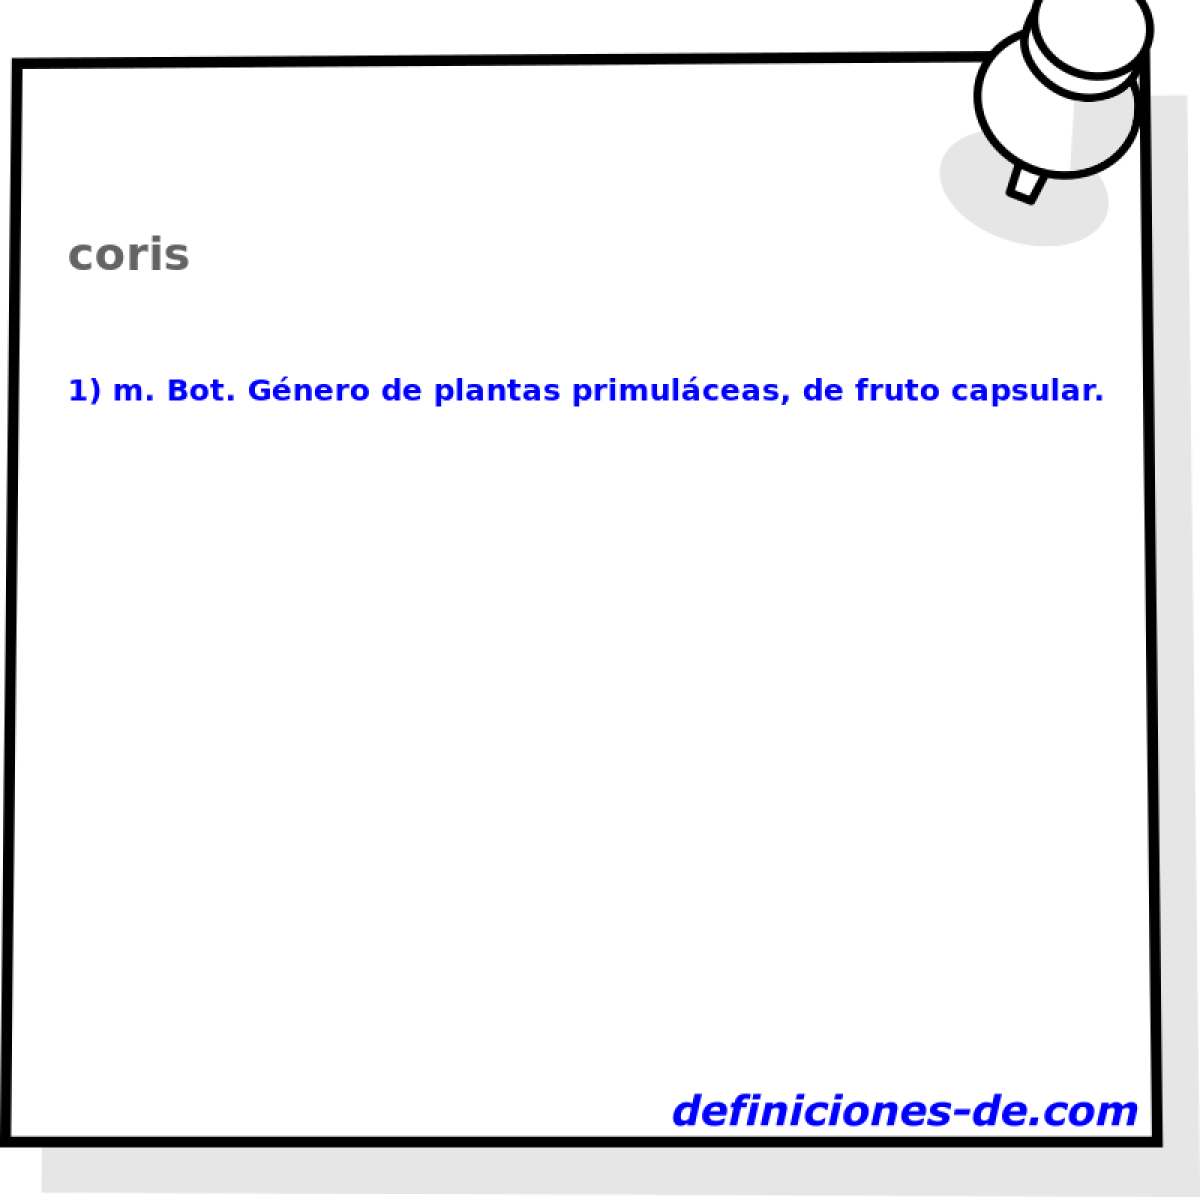 coris 